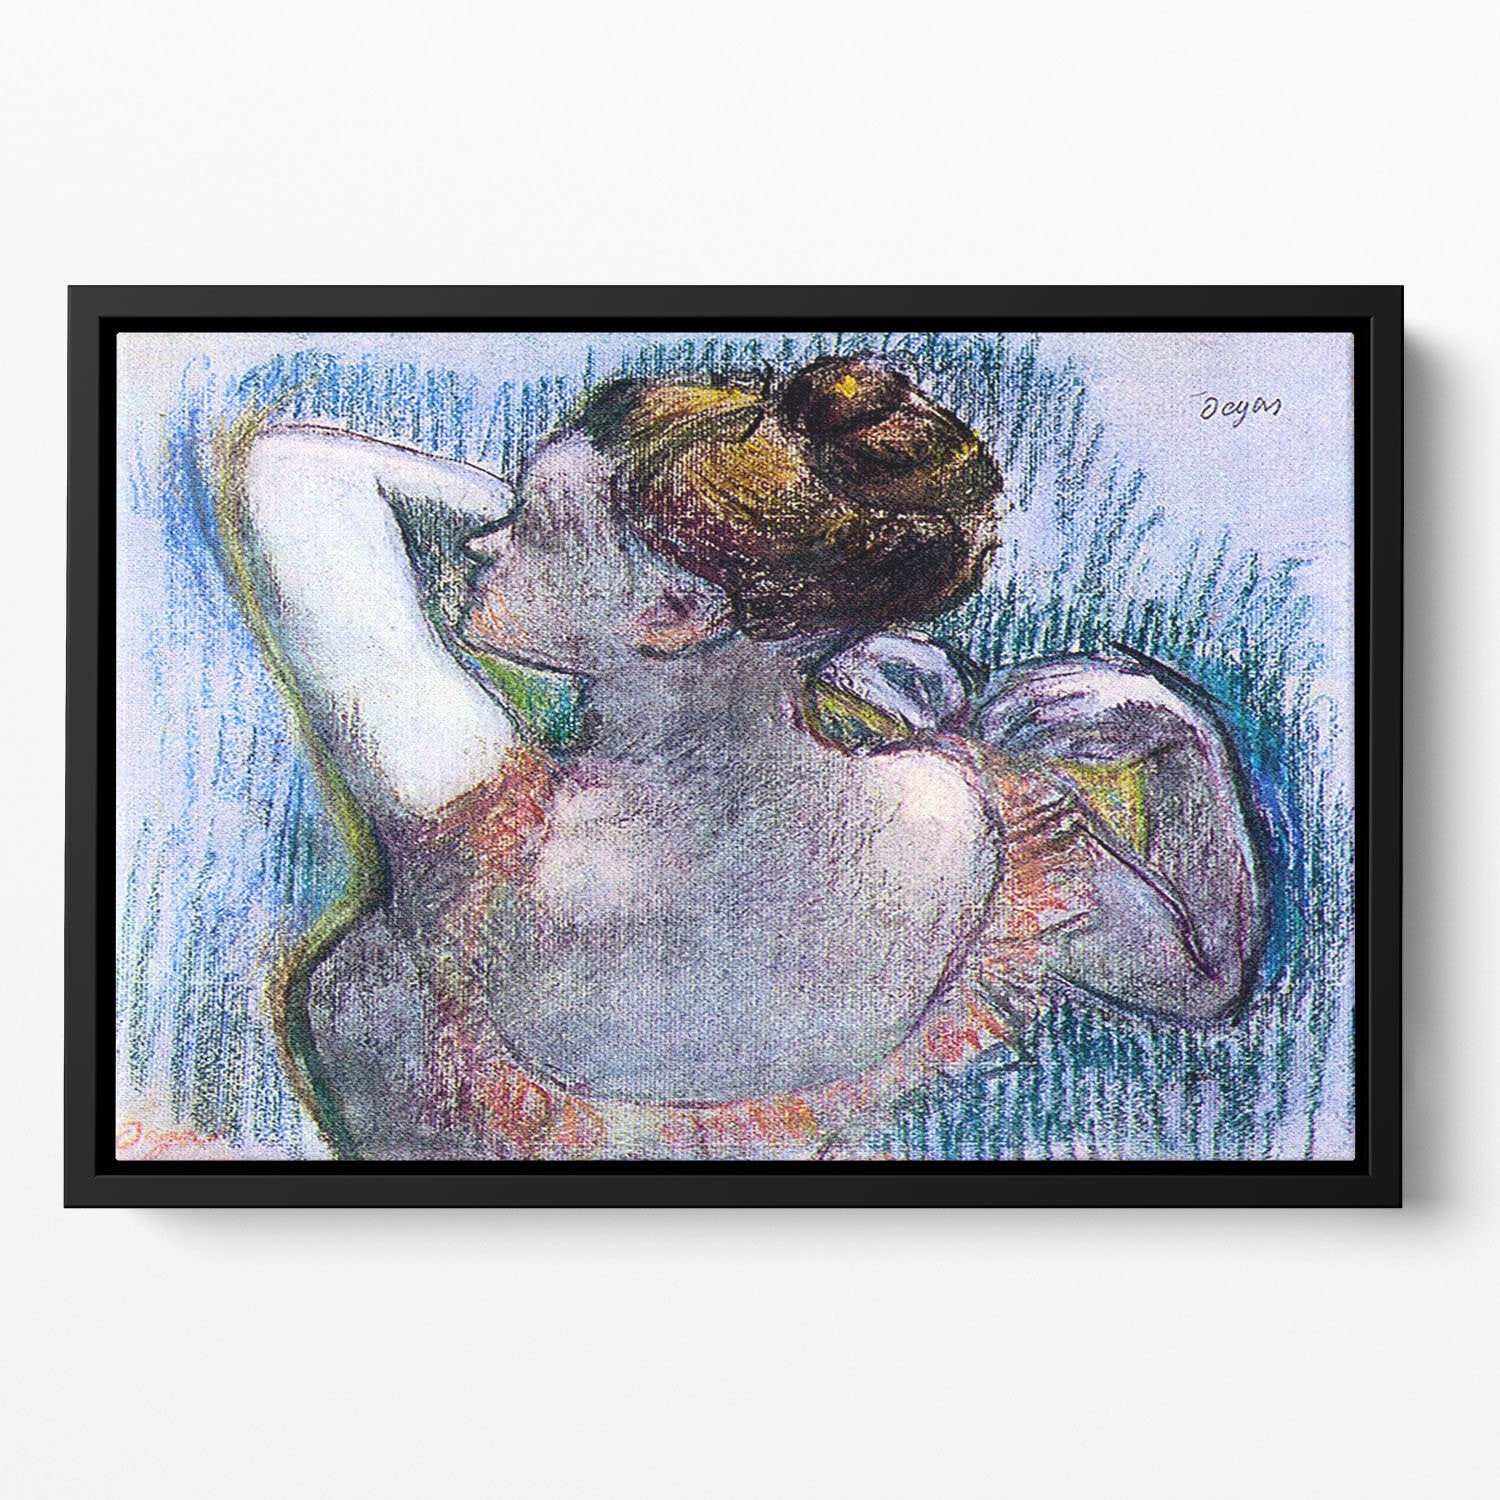 Dancer 1 by Degas Floating Framed Canvas